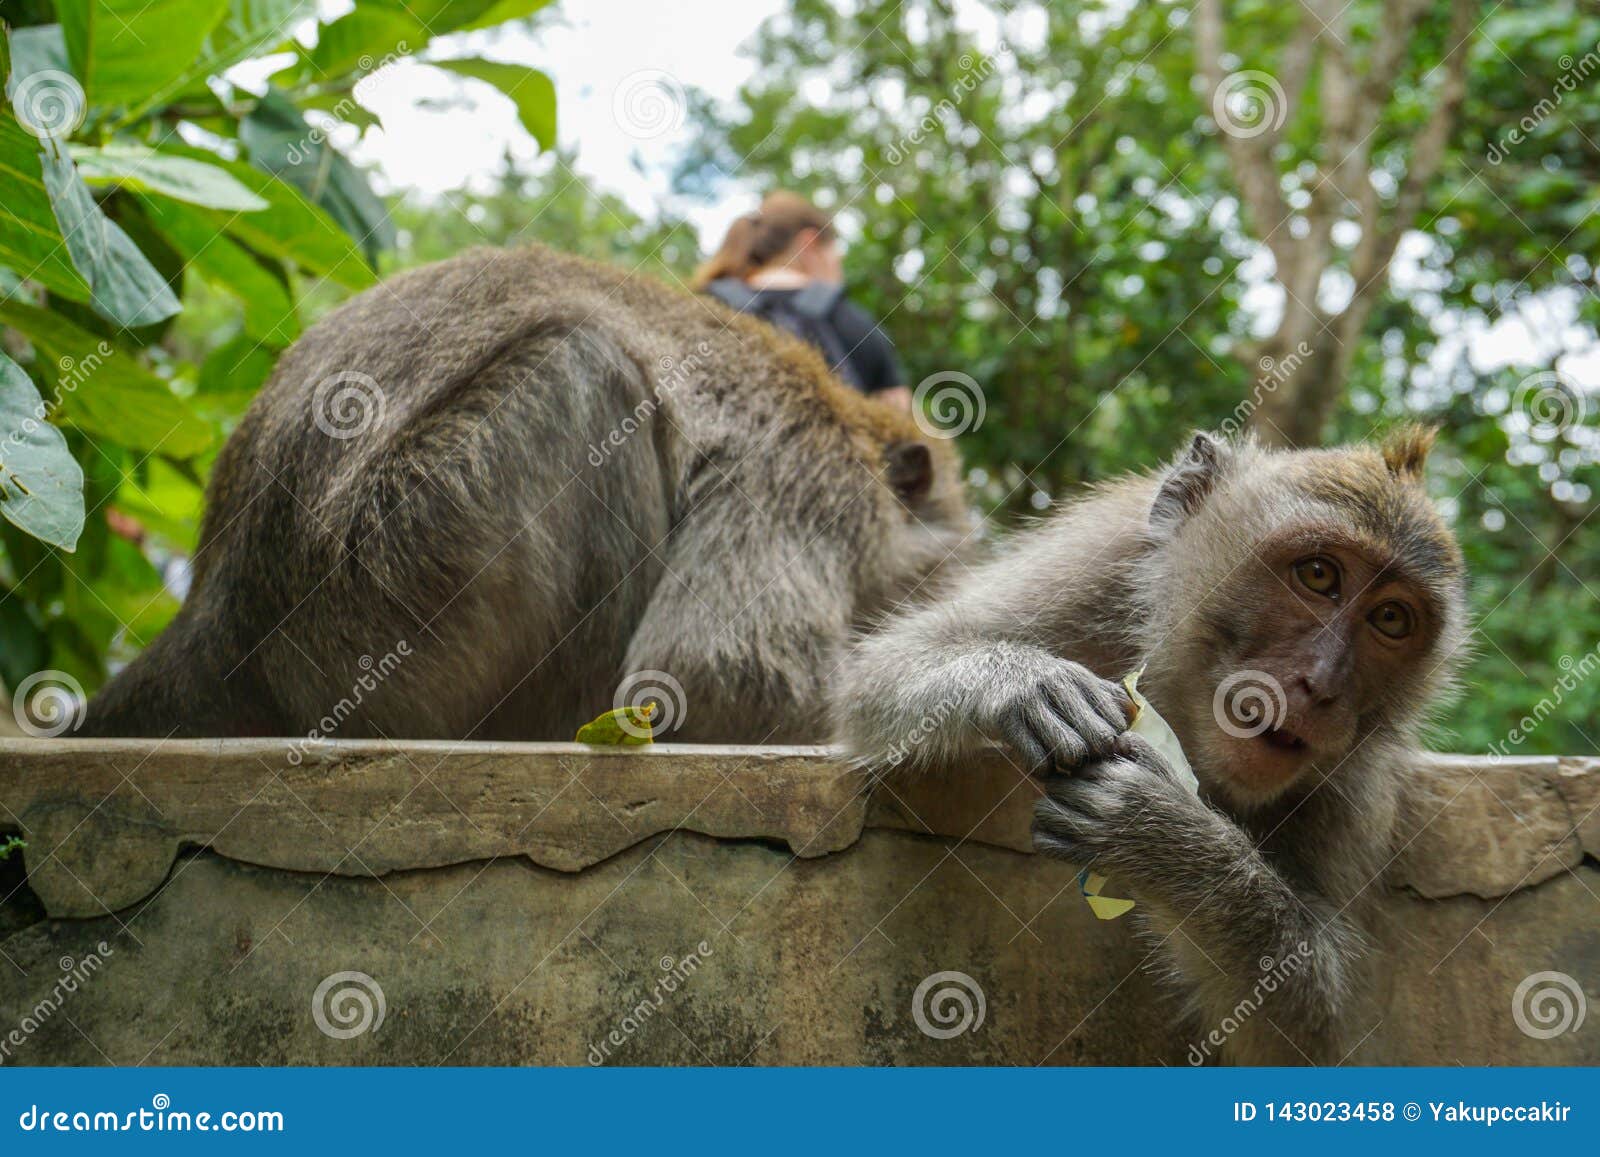 2 помощи обезьян, который нужно получить освобожданный блох к другим, Бали, Индонезии